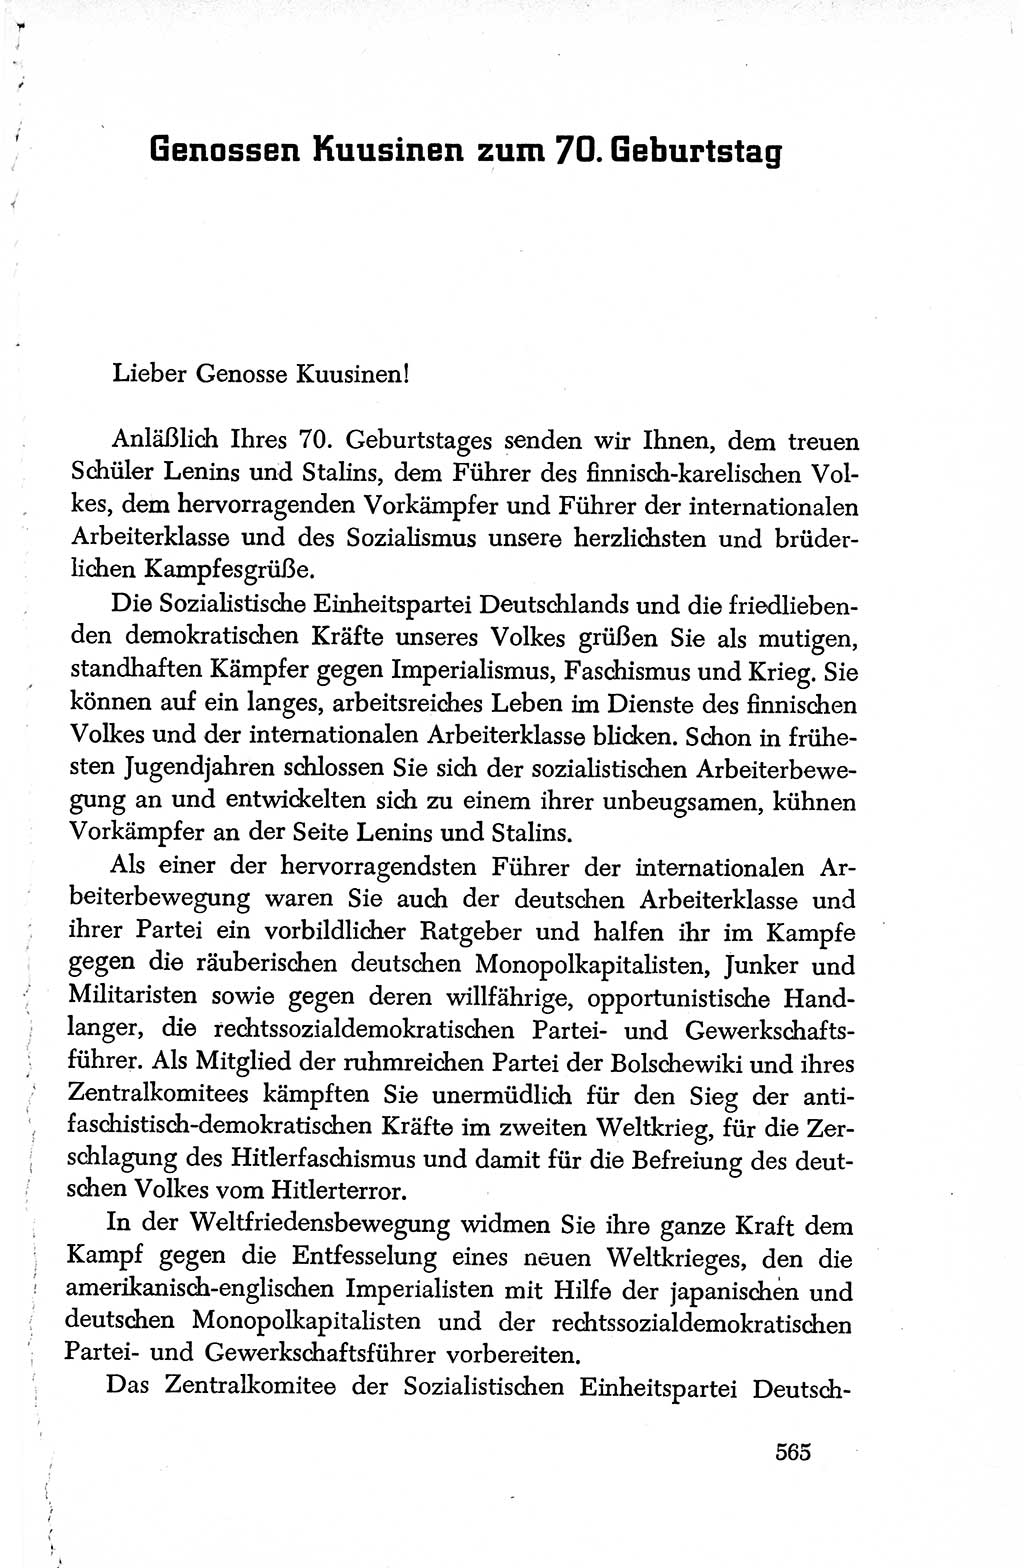 Dokumente der Sozialistischen Einheitspartei Deutschlands (SED) [Deutsche Demokratische Republik (DDR)] 1950-1952, Seite 565 (Dok. SED DDR 1950-1952, S. 565)